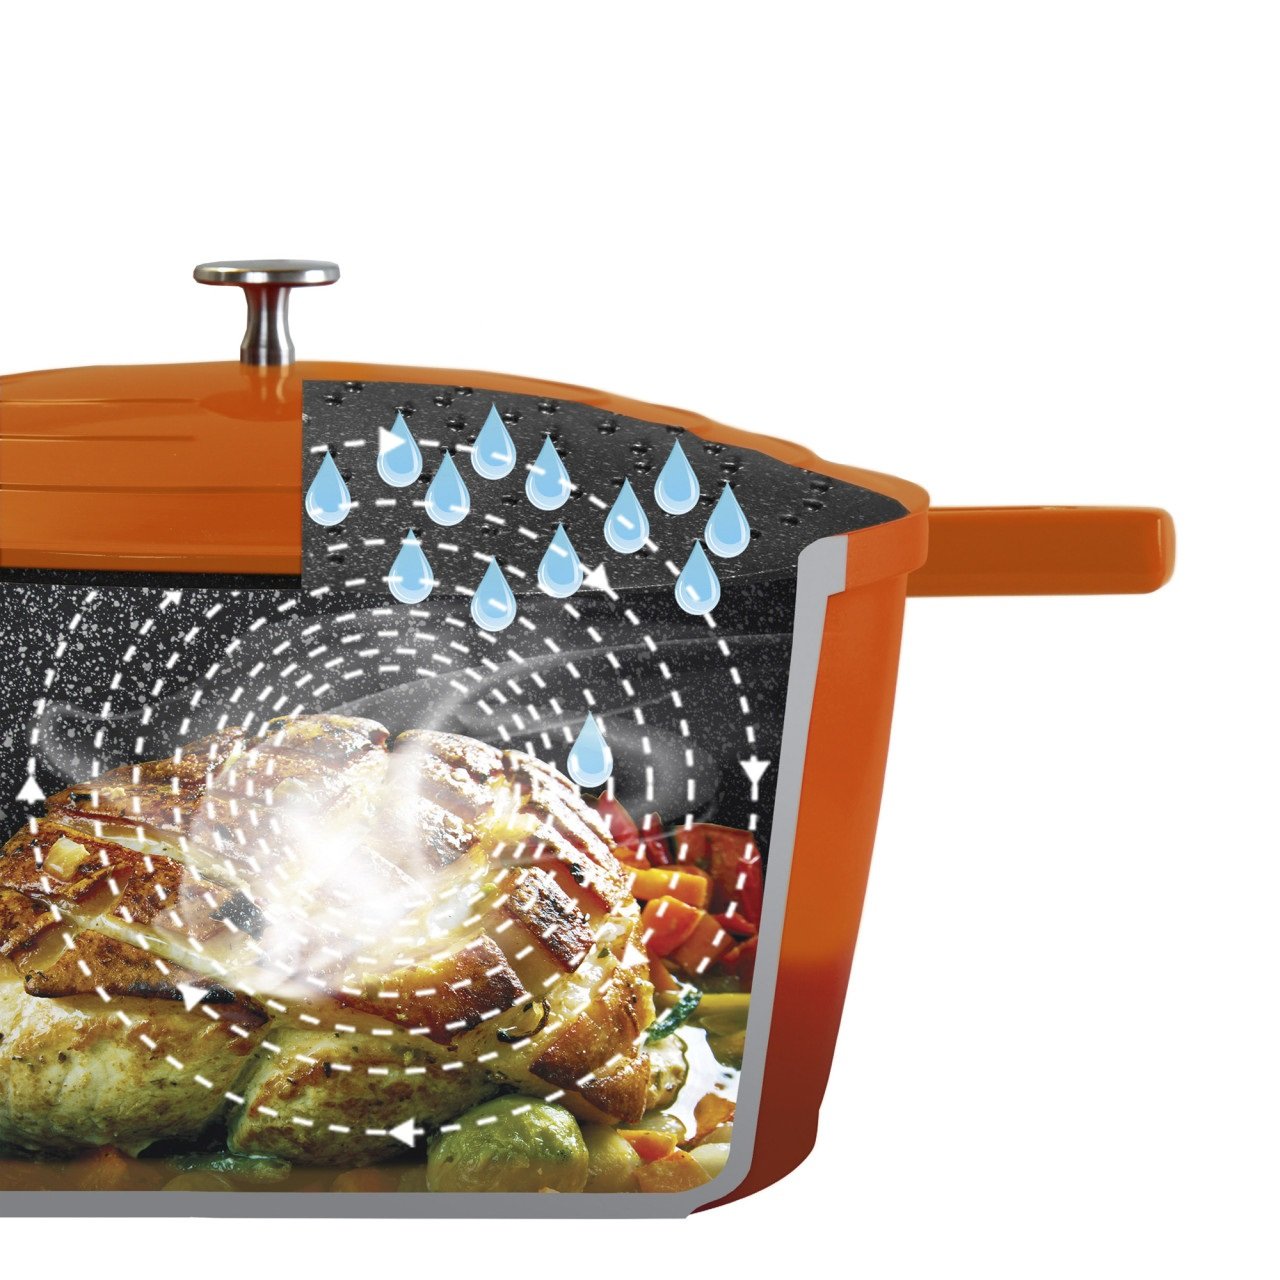 STONELINE® Gourmet asador 28 cm con tapa, apto para horno e inducción, revestimiento antiadherente, rojo horno